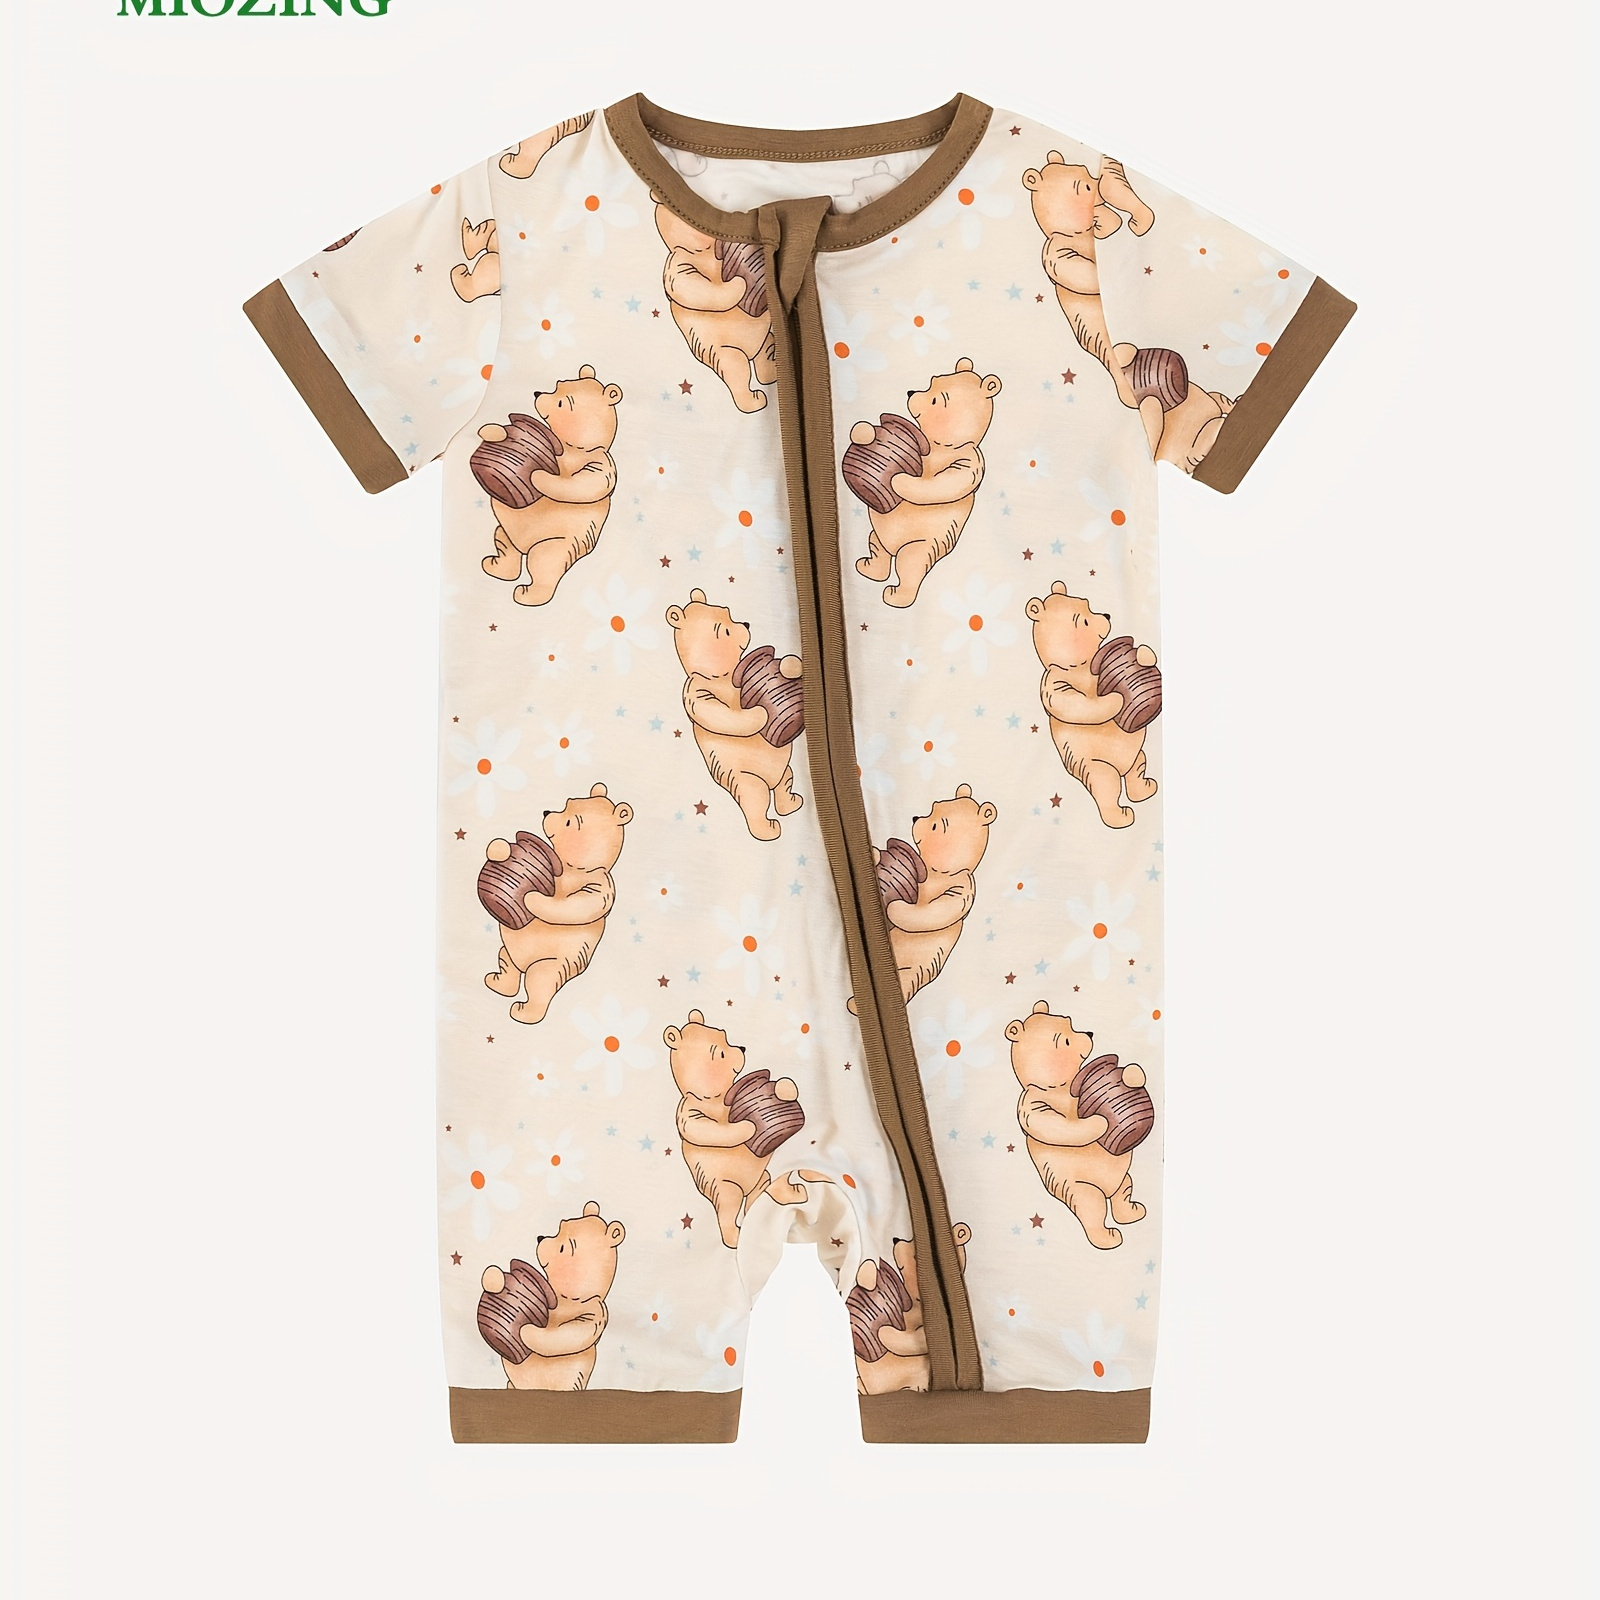 

Miozing Bamboo Fiber Bodysuit For Baby, Cartoon Bear & Honey Pattern Zip Up Short Sleeve Onesie, Infant & Toddler Girl's Romper